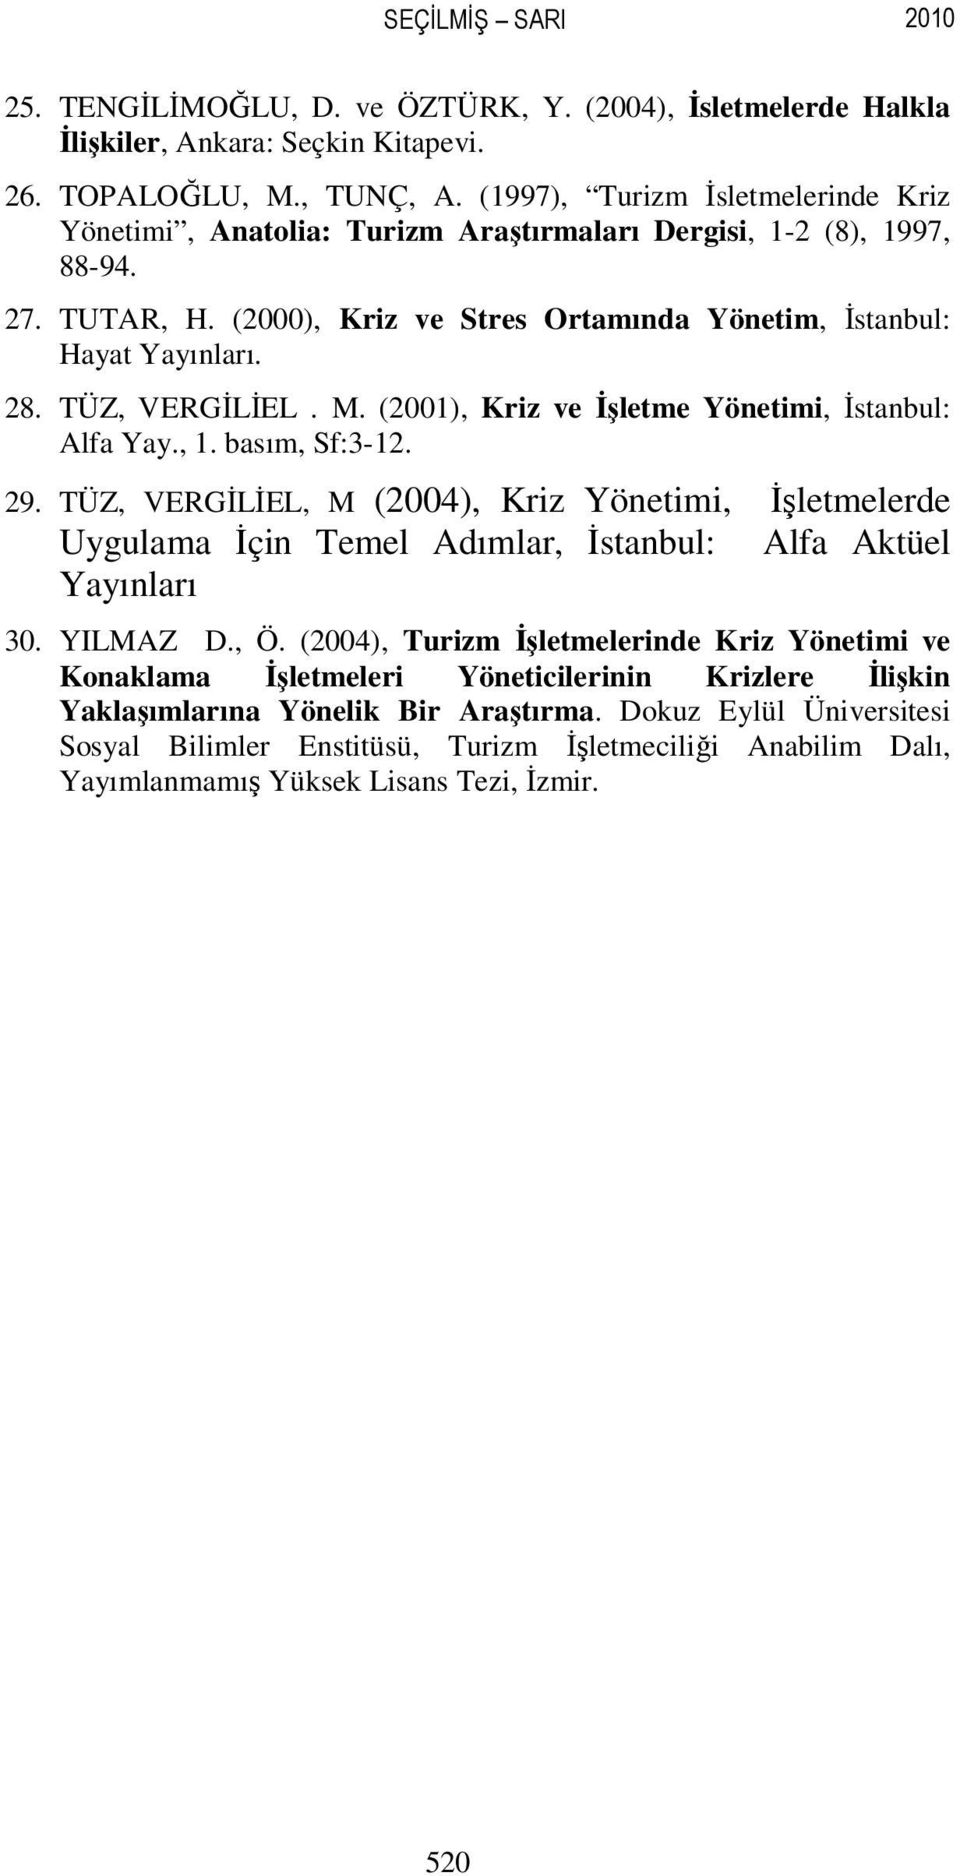 TÜZ, VERGİLİEL. M. (2001), Kriz ve İşletme Yönetimi, İstanbul: Alfa Yay., 1. basım, Sf:3-12. 29.